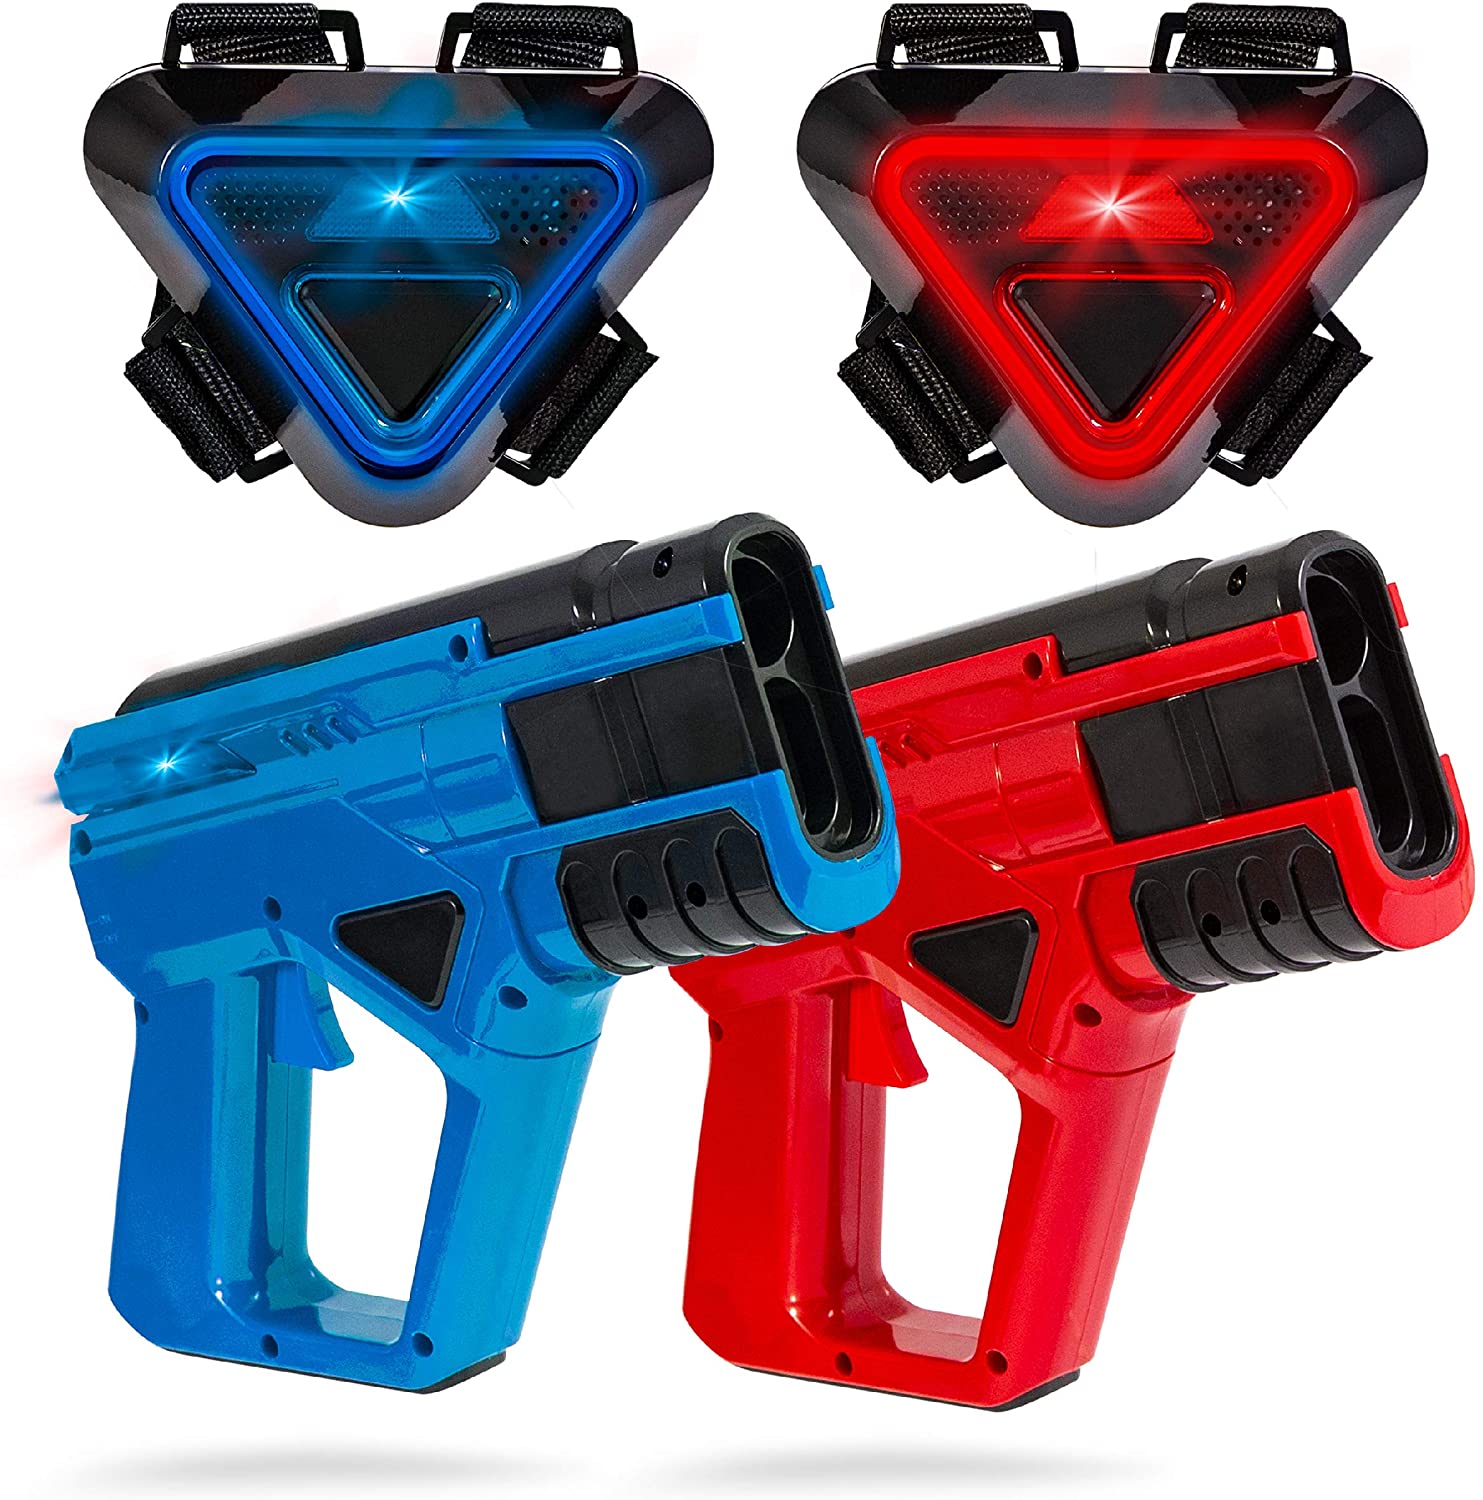 SHARPER IMAGE Two-Player Toy Laser Tag Gun Blaster & Vest Armor Set